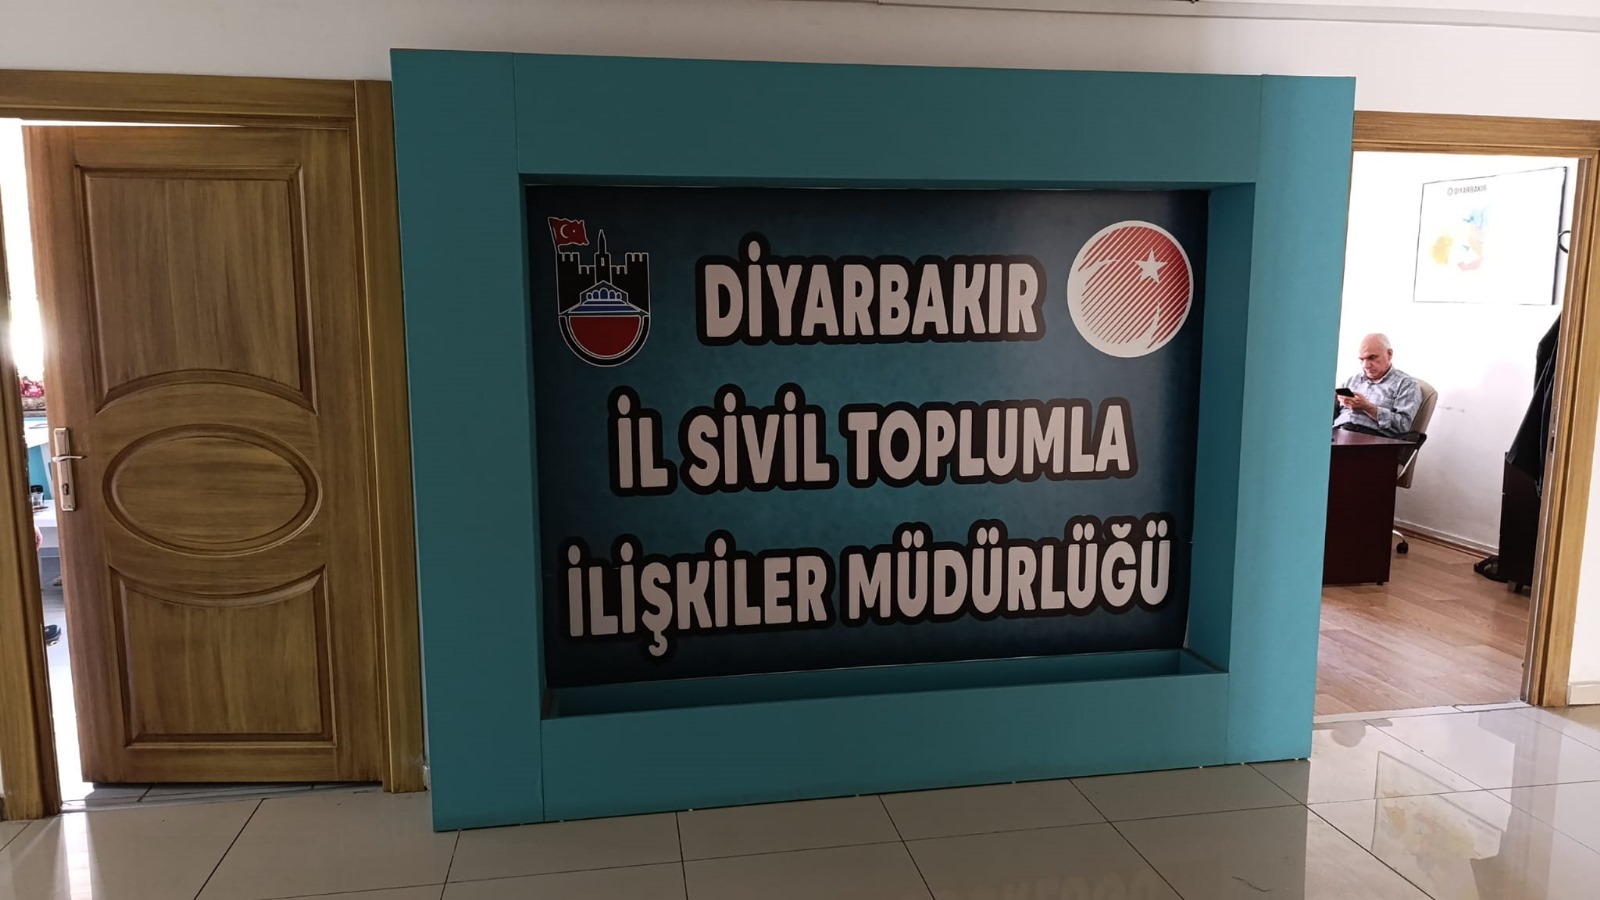 Diyarbakır’daki Dernek sayısı nüfusun yüzde 1,1’ini oluşturuyor